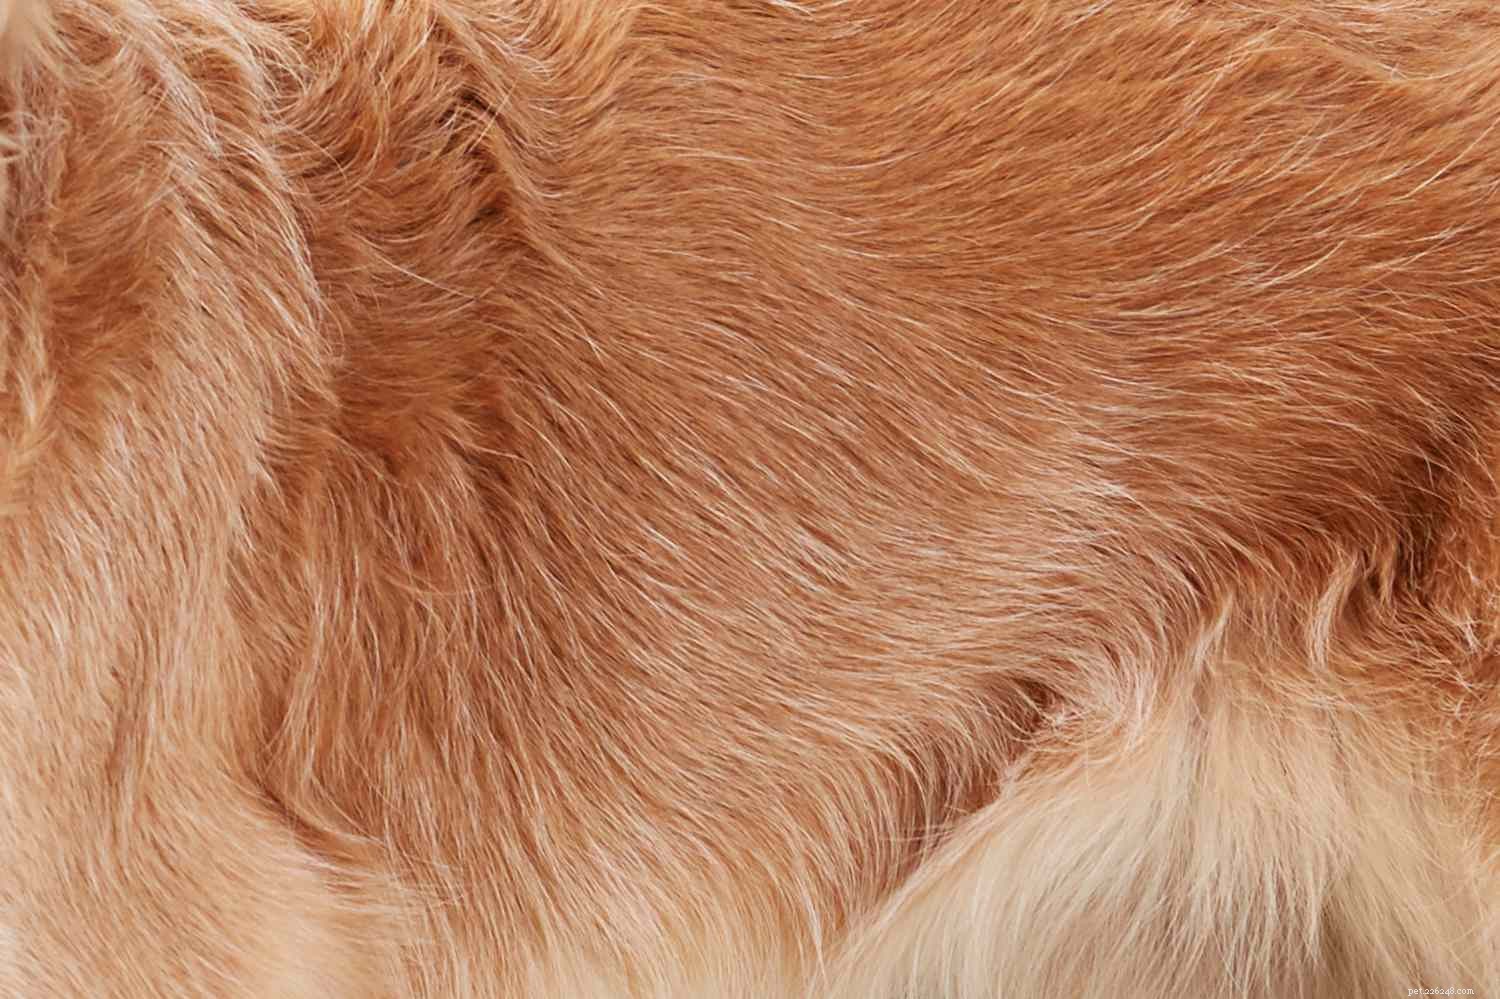 Golden Retriever :caractéristiques et soins de la race de chien